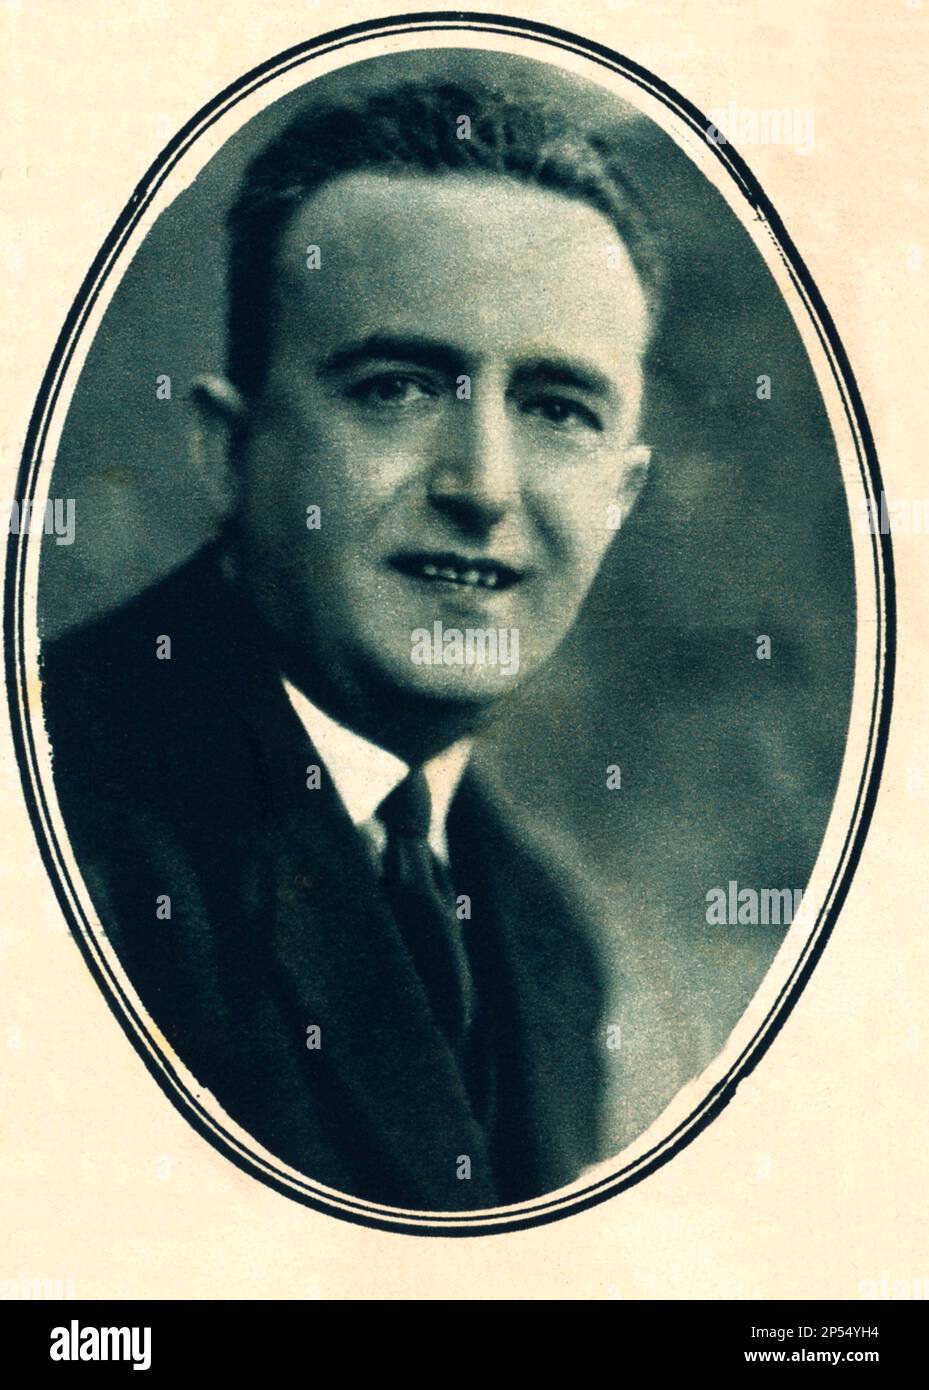 1929 , ITALIEN : der italienische Komponist Maestro GIUSEPPE PIETRI ( 1886 - 1946 ) , Autor von ACQUA CHETA ( 1920 ) auf Libretto von Augusto Novelli . - MUSICA leggera - Compositore - Ritratto - Porträt - Archivio GBB Stockfoto